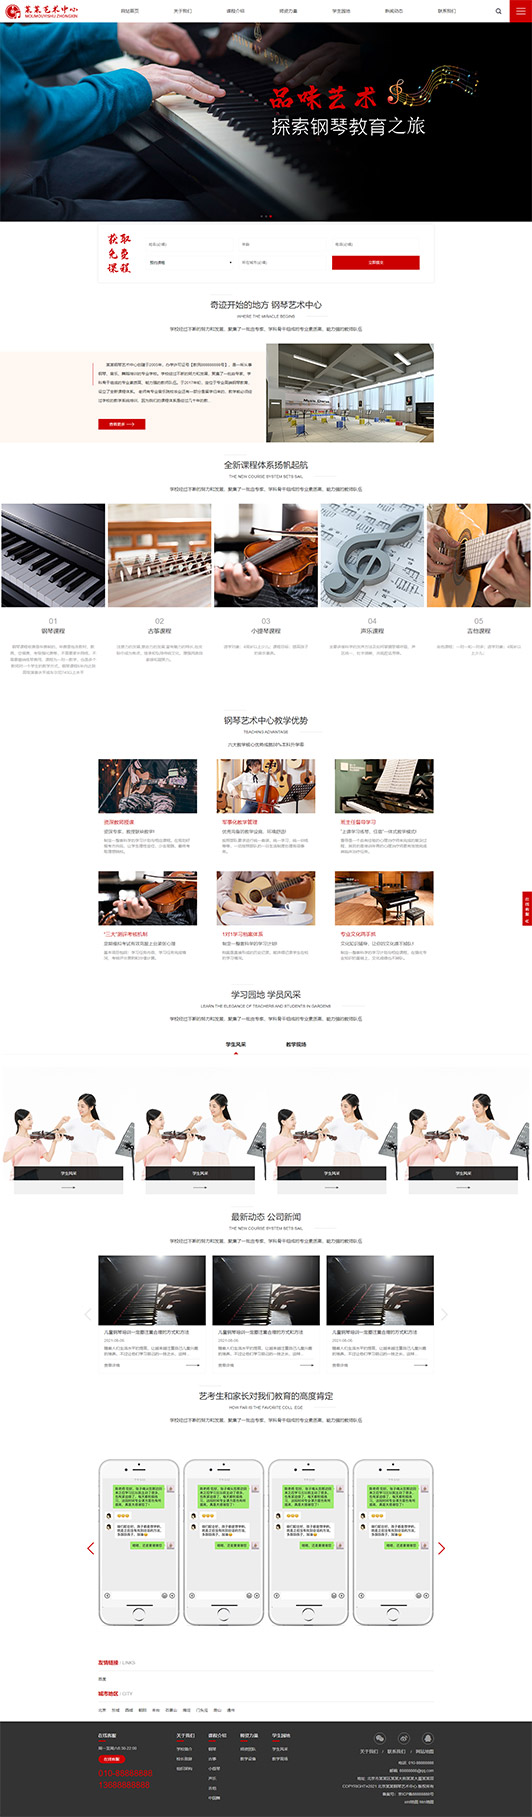 江西钢琴艺术培训公司响应式企业网站